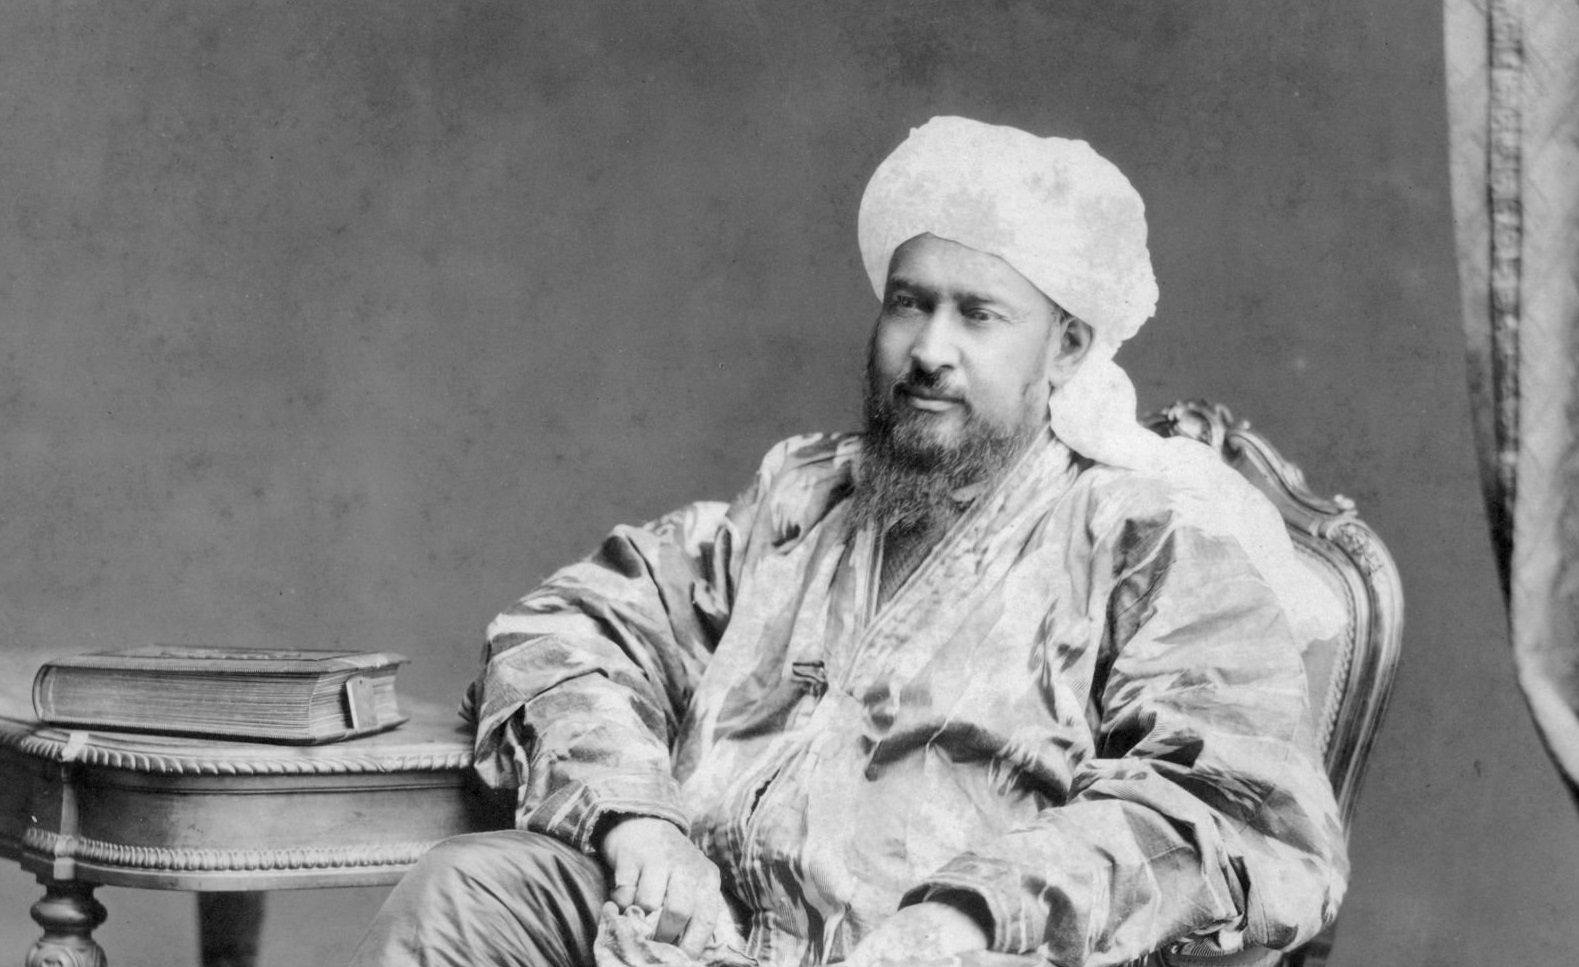 قام يعقوب بك بين عامي 1865- 1877م بتوحيد ستة ولايات في تركستان الشرقية تحت سيطرته، ونصب نفسه ملكا، تحت مسمى “إمارة إيتيْشار” وتعني إمارة المدن السبعة.